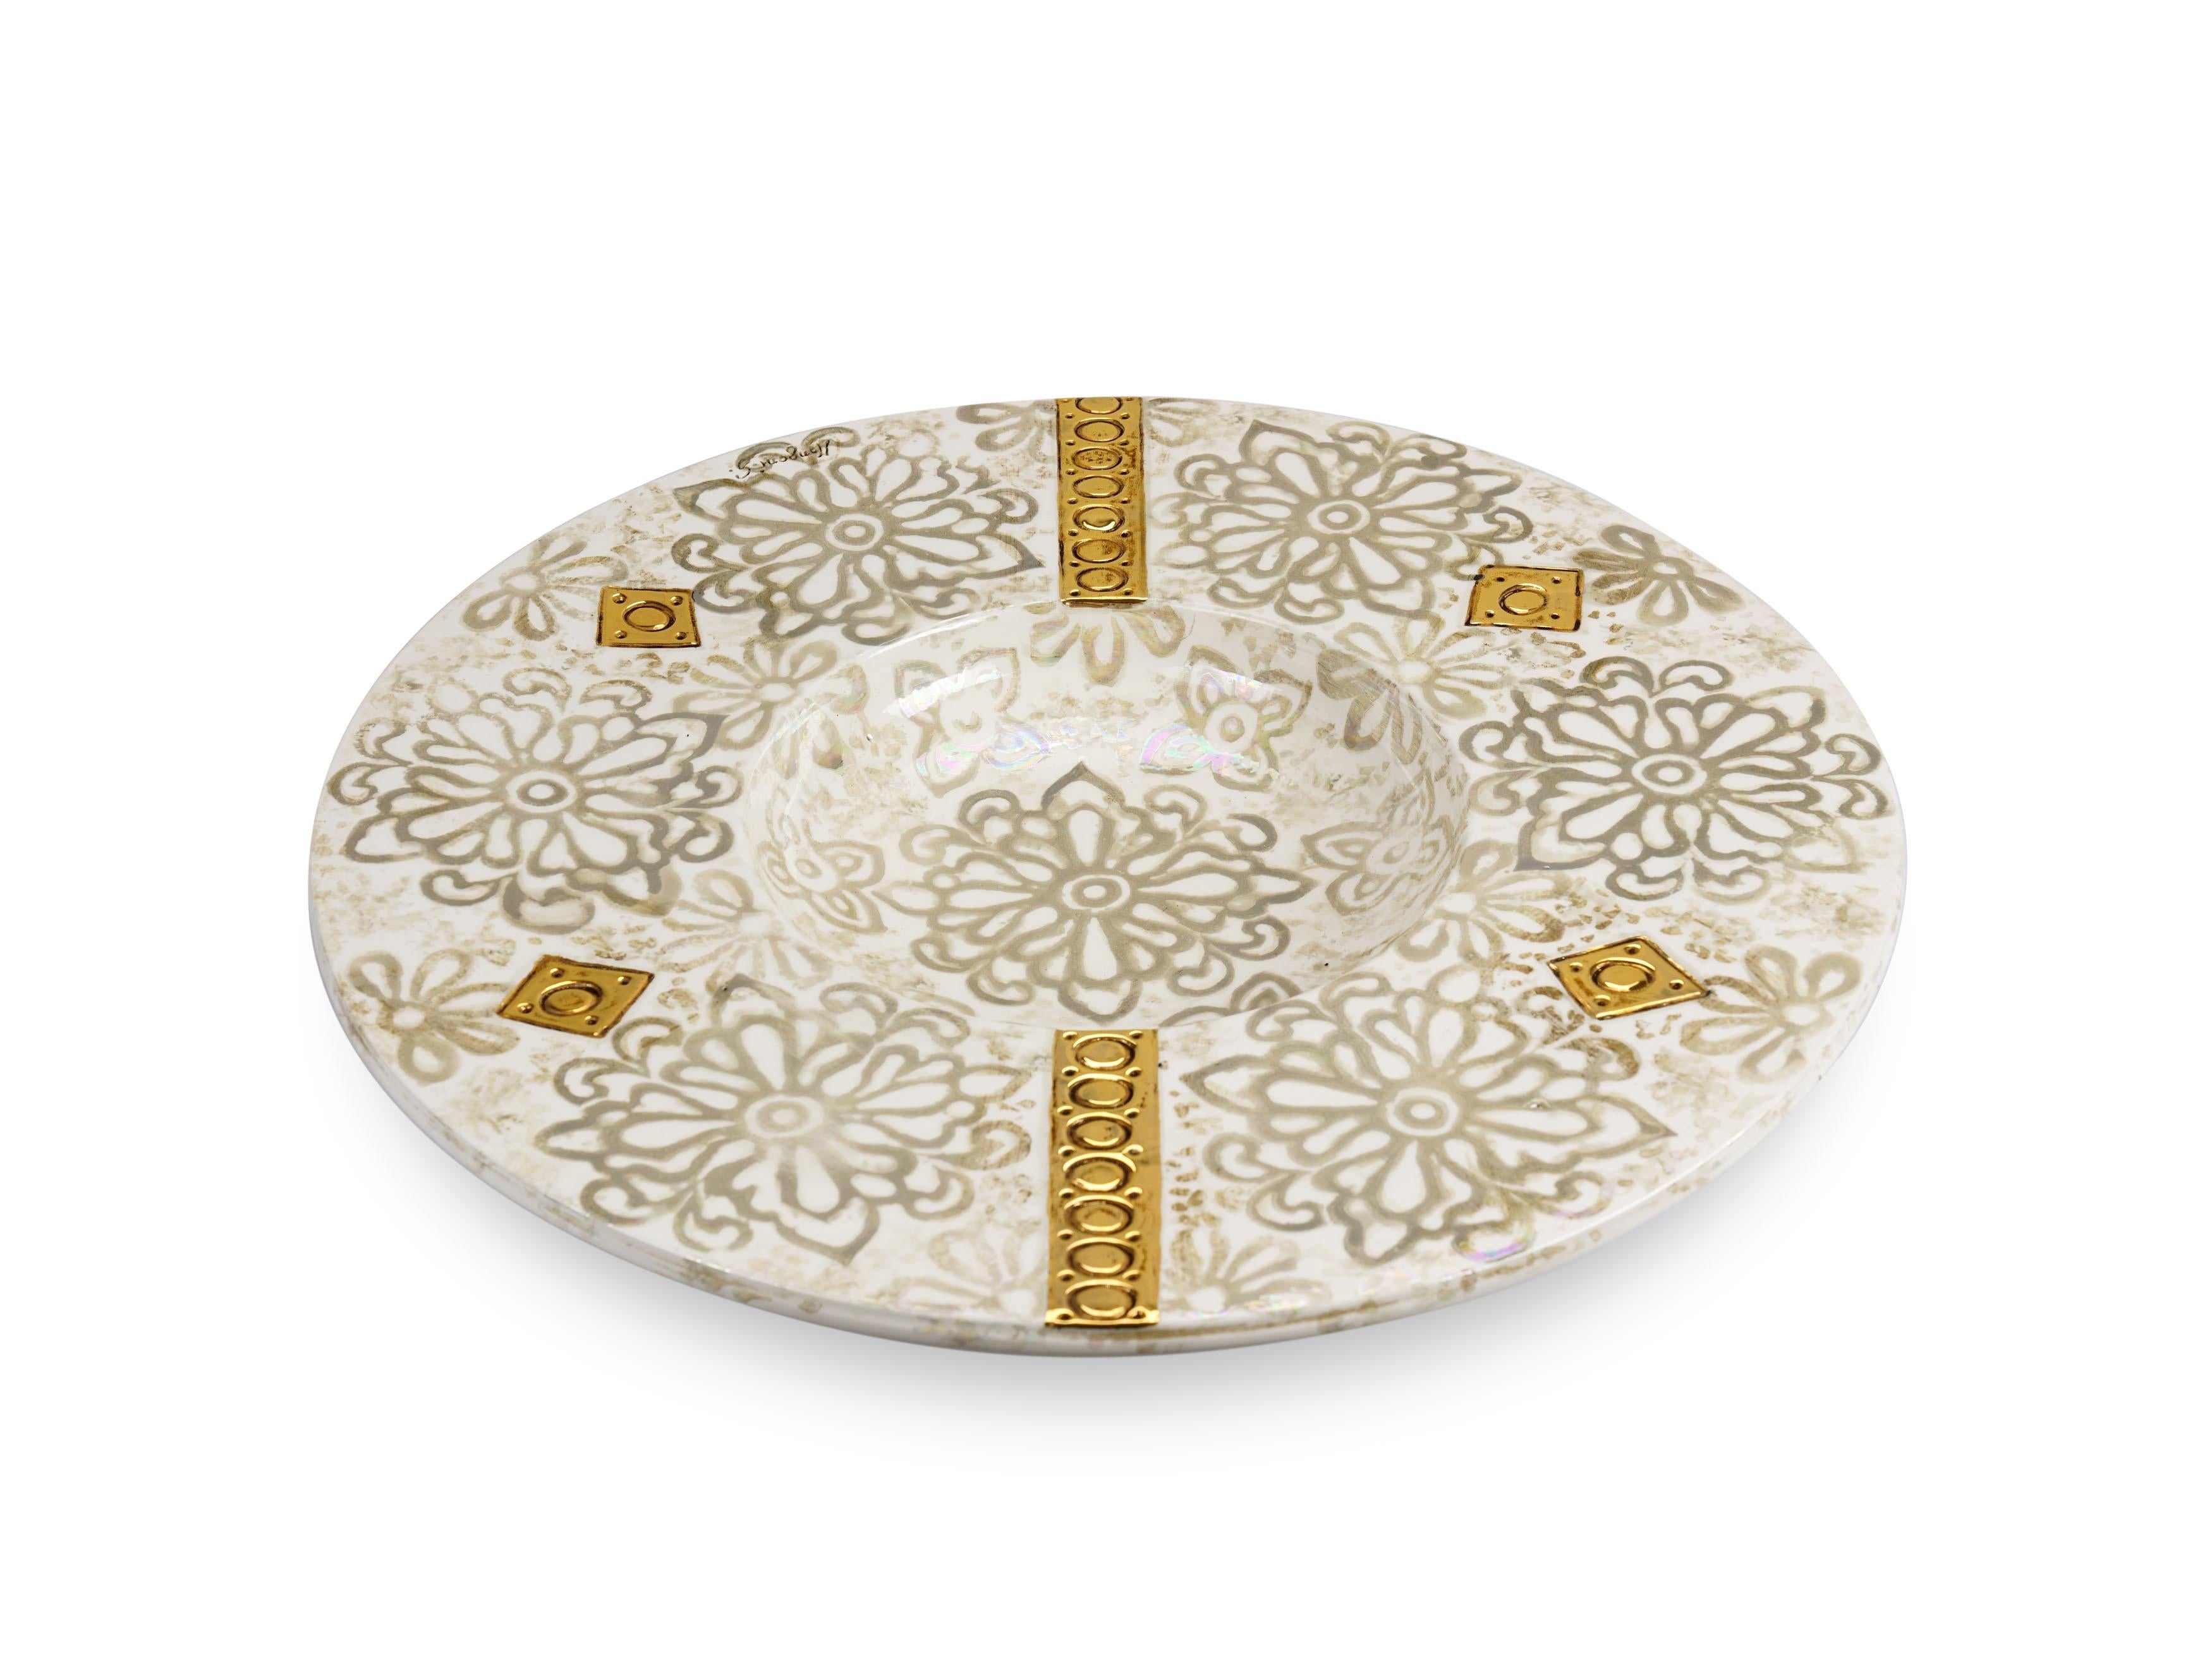 Großer dekorativer Keramikteller, hergestellt und handbemalt von dem Künstler G. Mengoni für deBlona. Durchmesser 64 cm (25,2 in). Die Oberfläche des Tellers ist mit aschfarbenen Blumenmotiven auf antikweißem Grund besetzt und verziert, die im